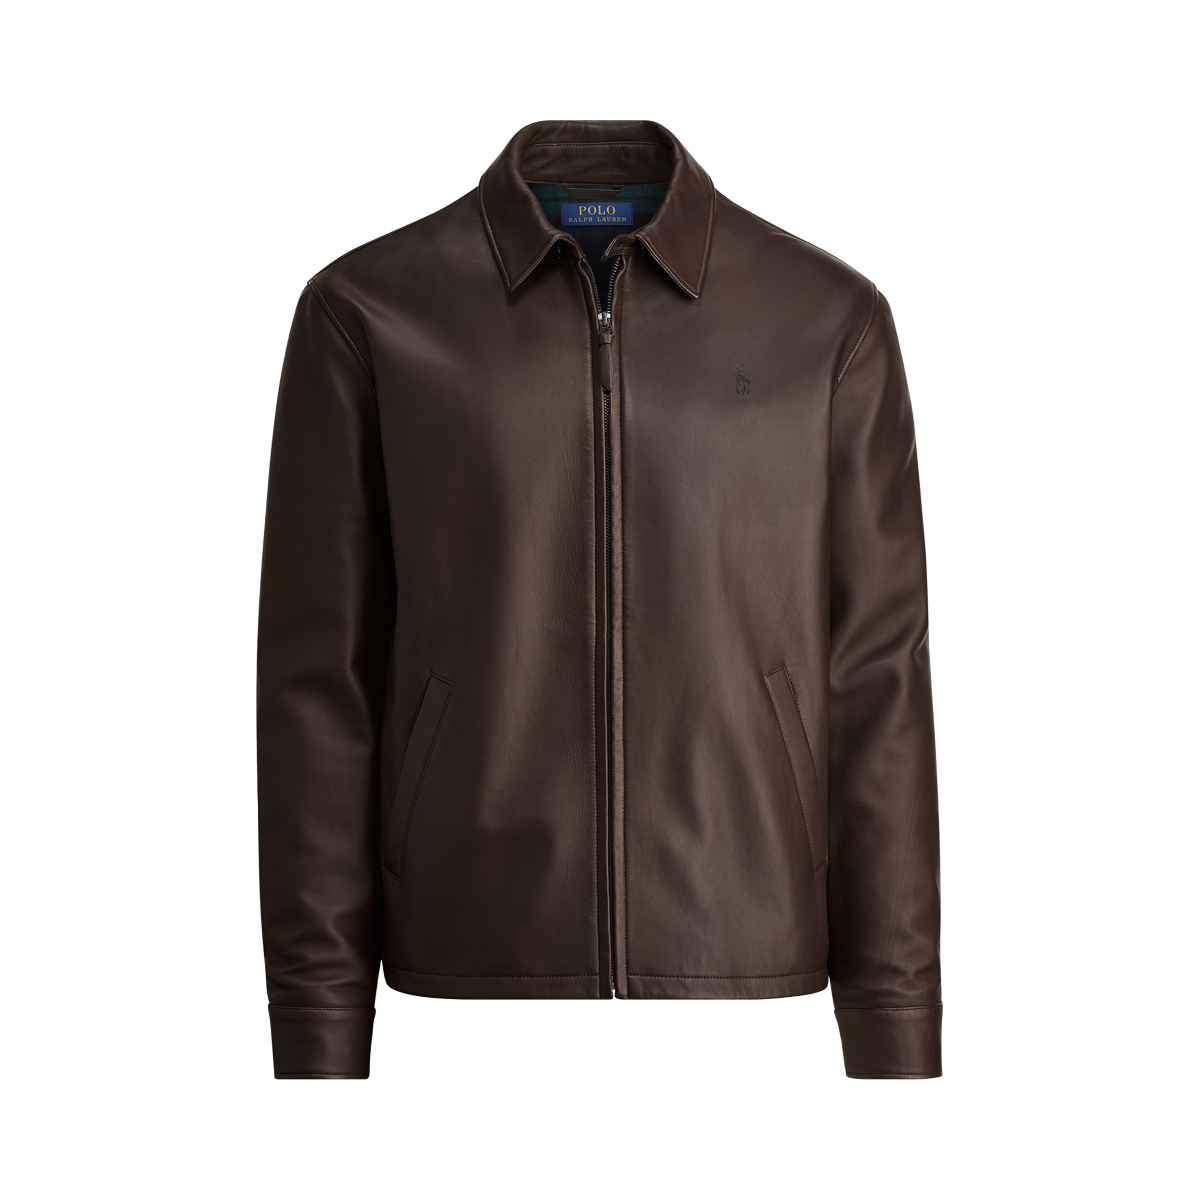 Aprender acerca 67+ imagen polo ralph lauren jacket leather